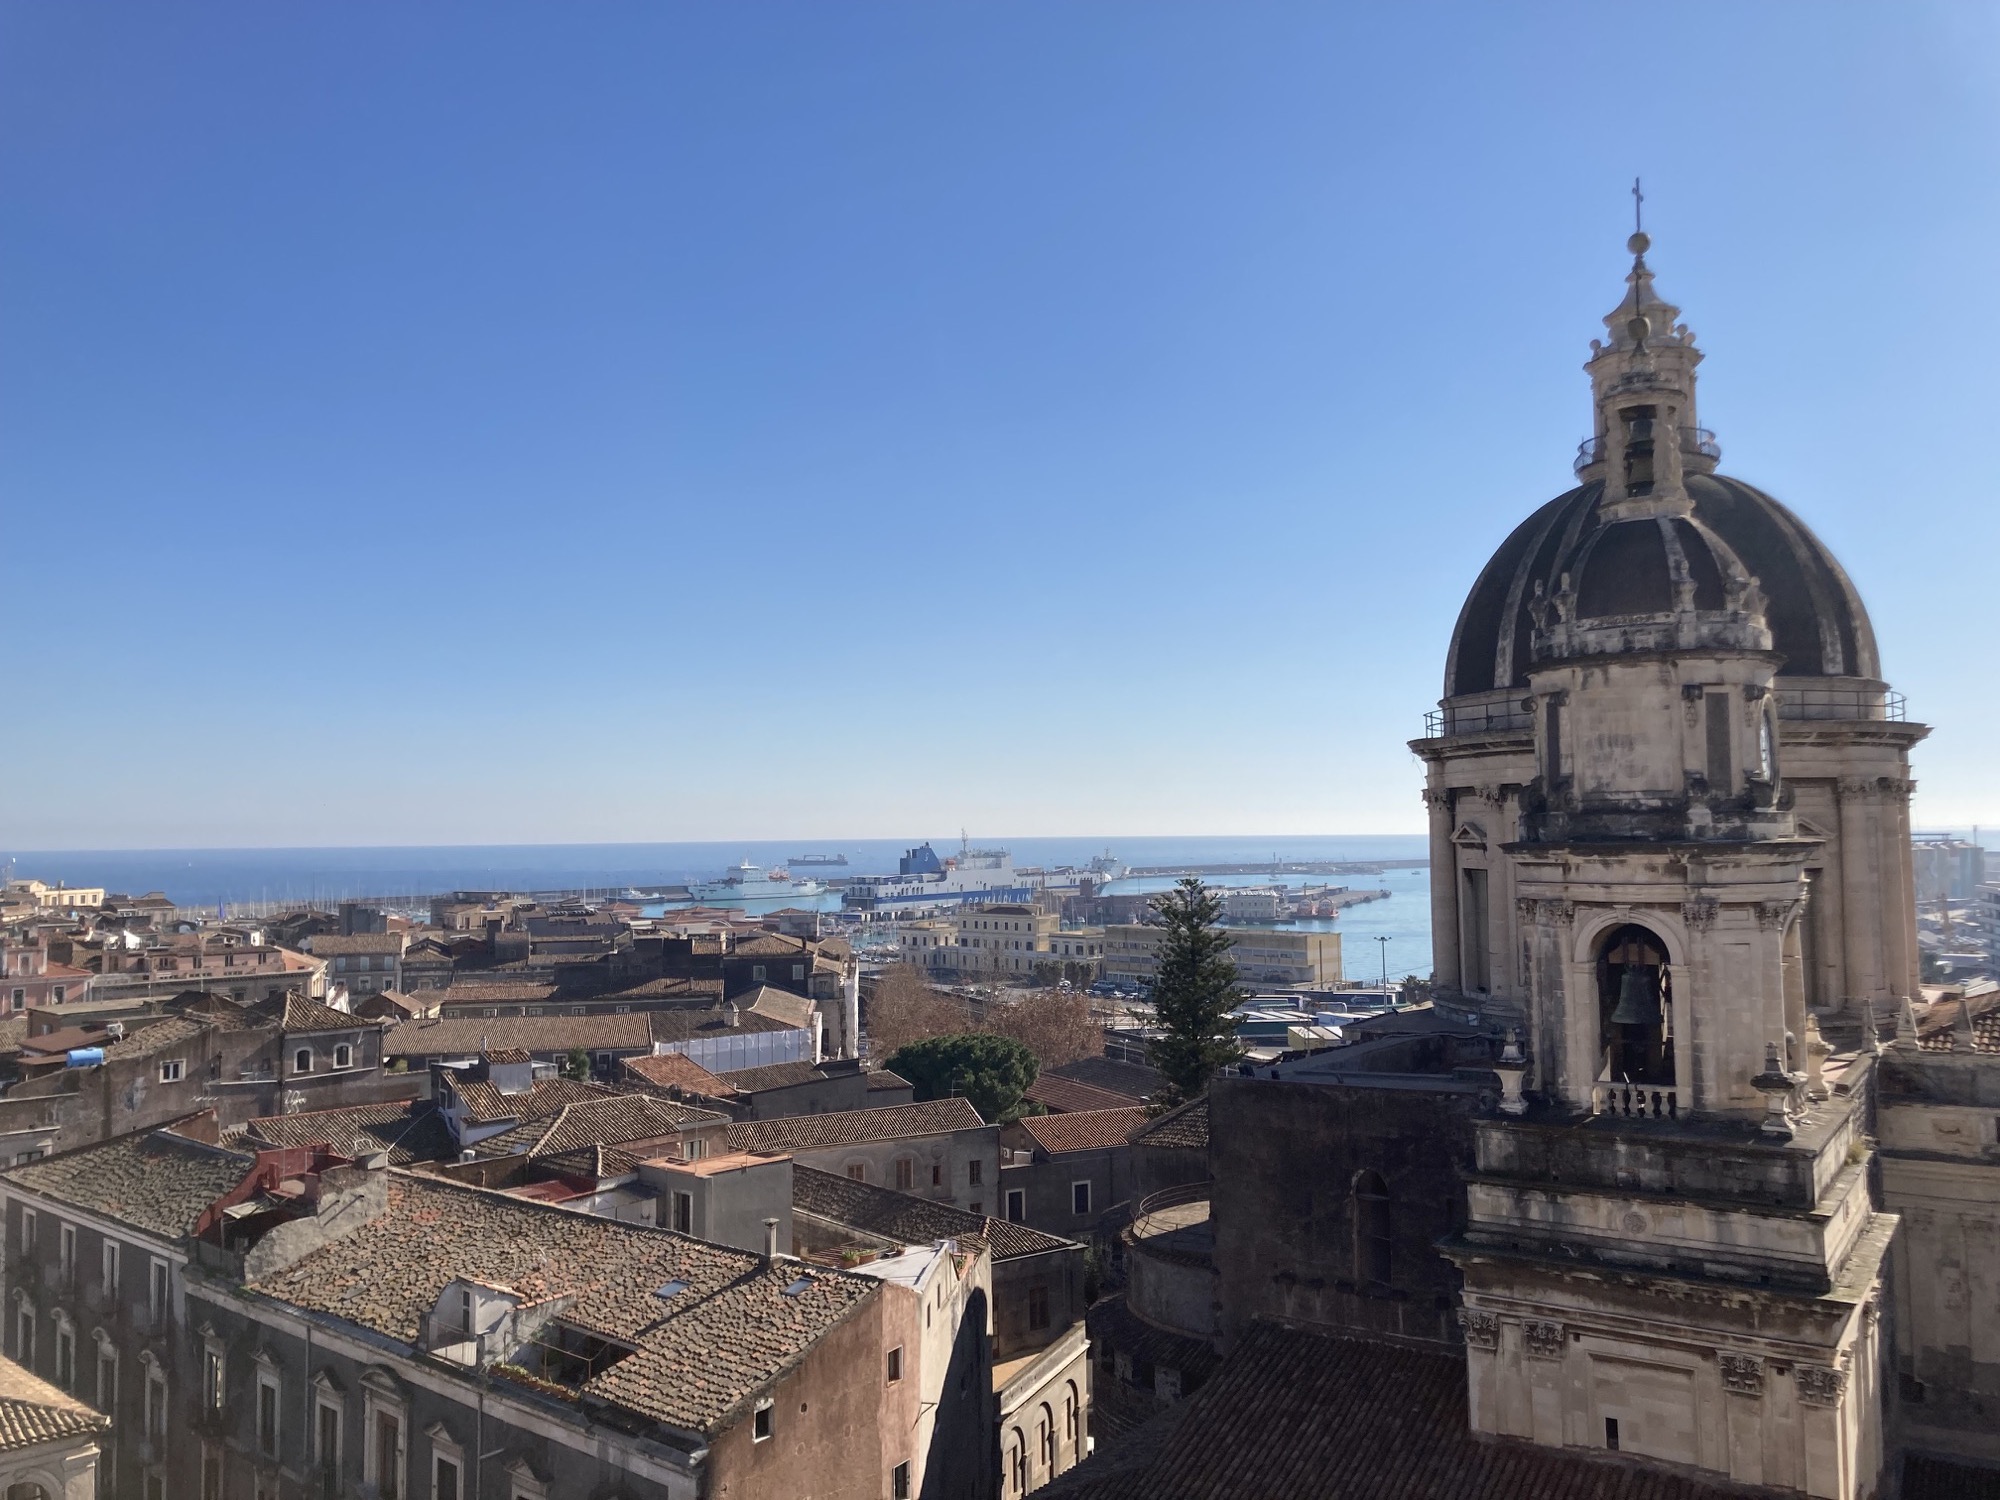 Ausblick von der Kuppel der Abteikirche Sant'Agata Richtung Hafen, im Vordergrund die Kuppel der Basilika